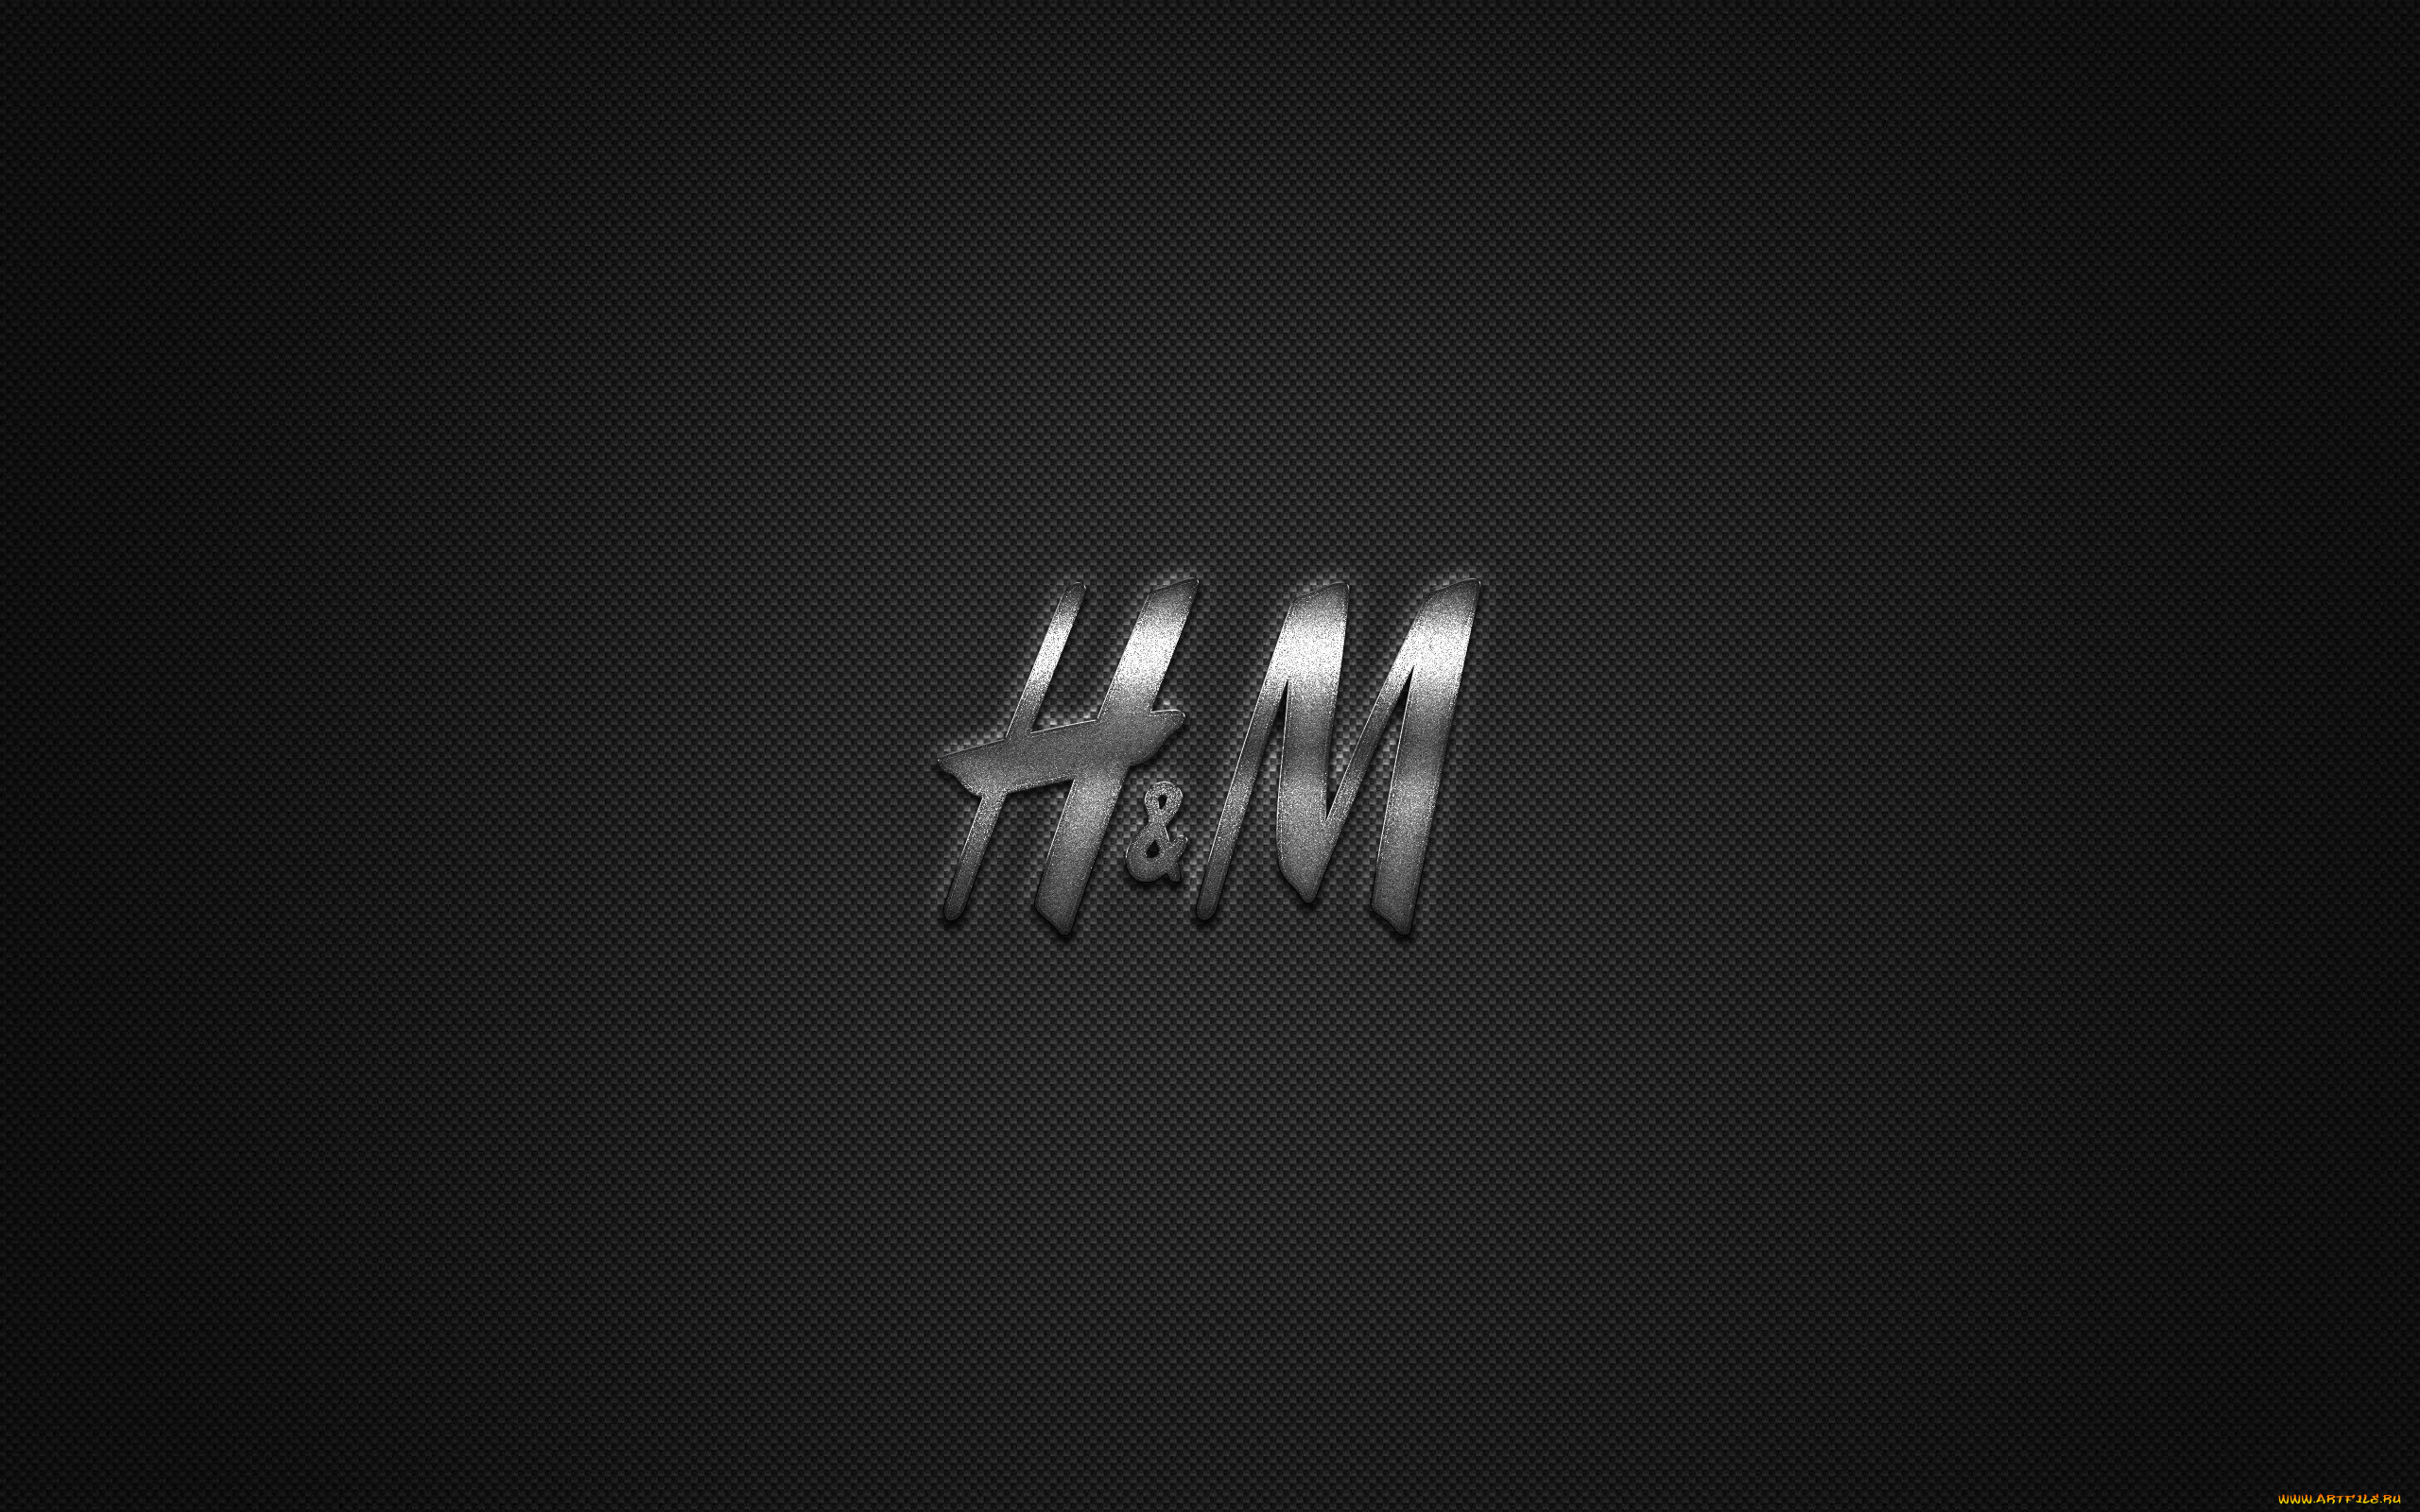 бренды, h&m, логотип, hennes, mauritz, металлическая, эмблема, марка, одежды, черно-углеродная, текстура, мировые, hm, модная, концепция